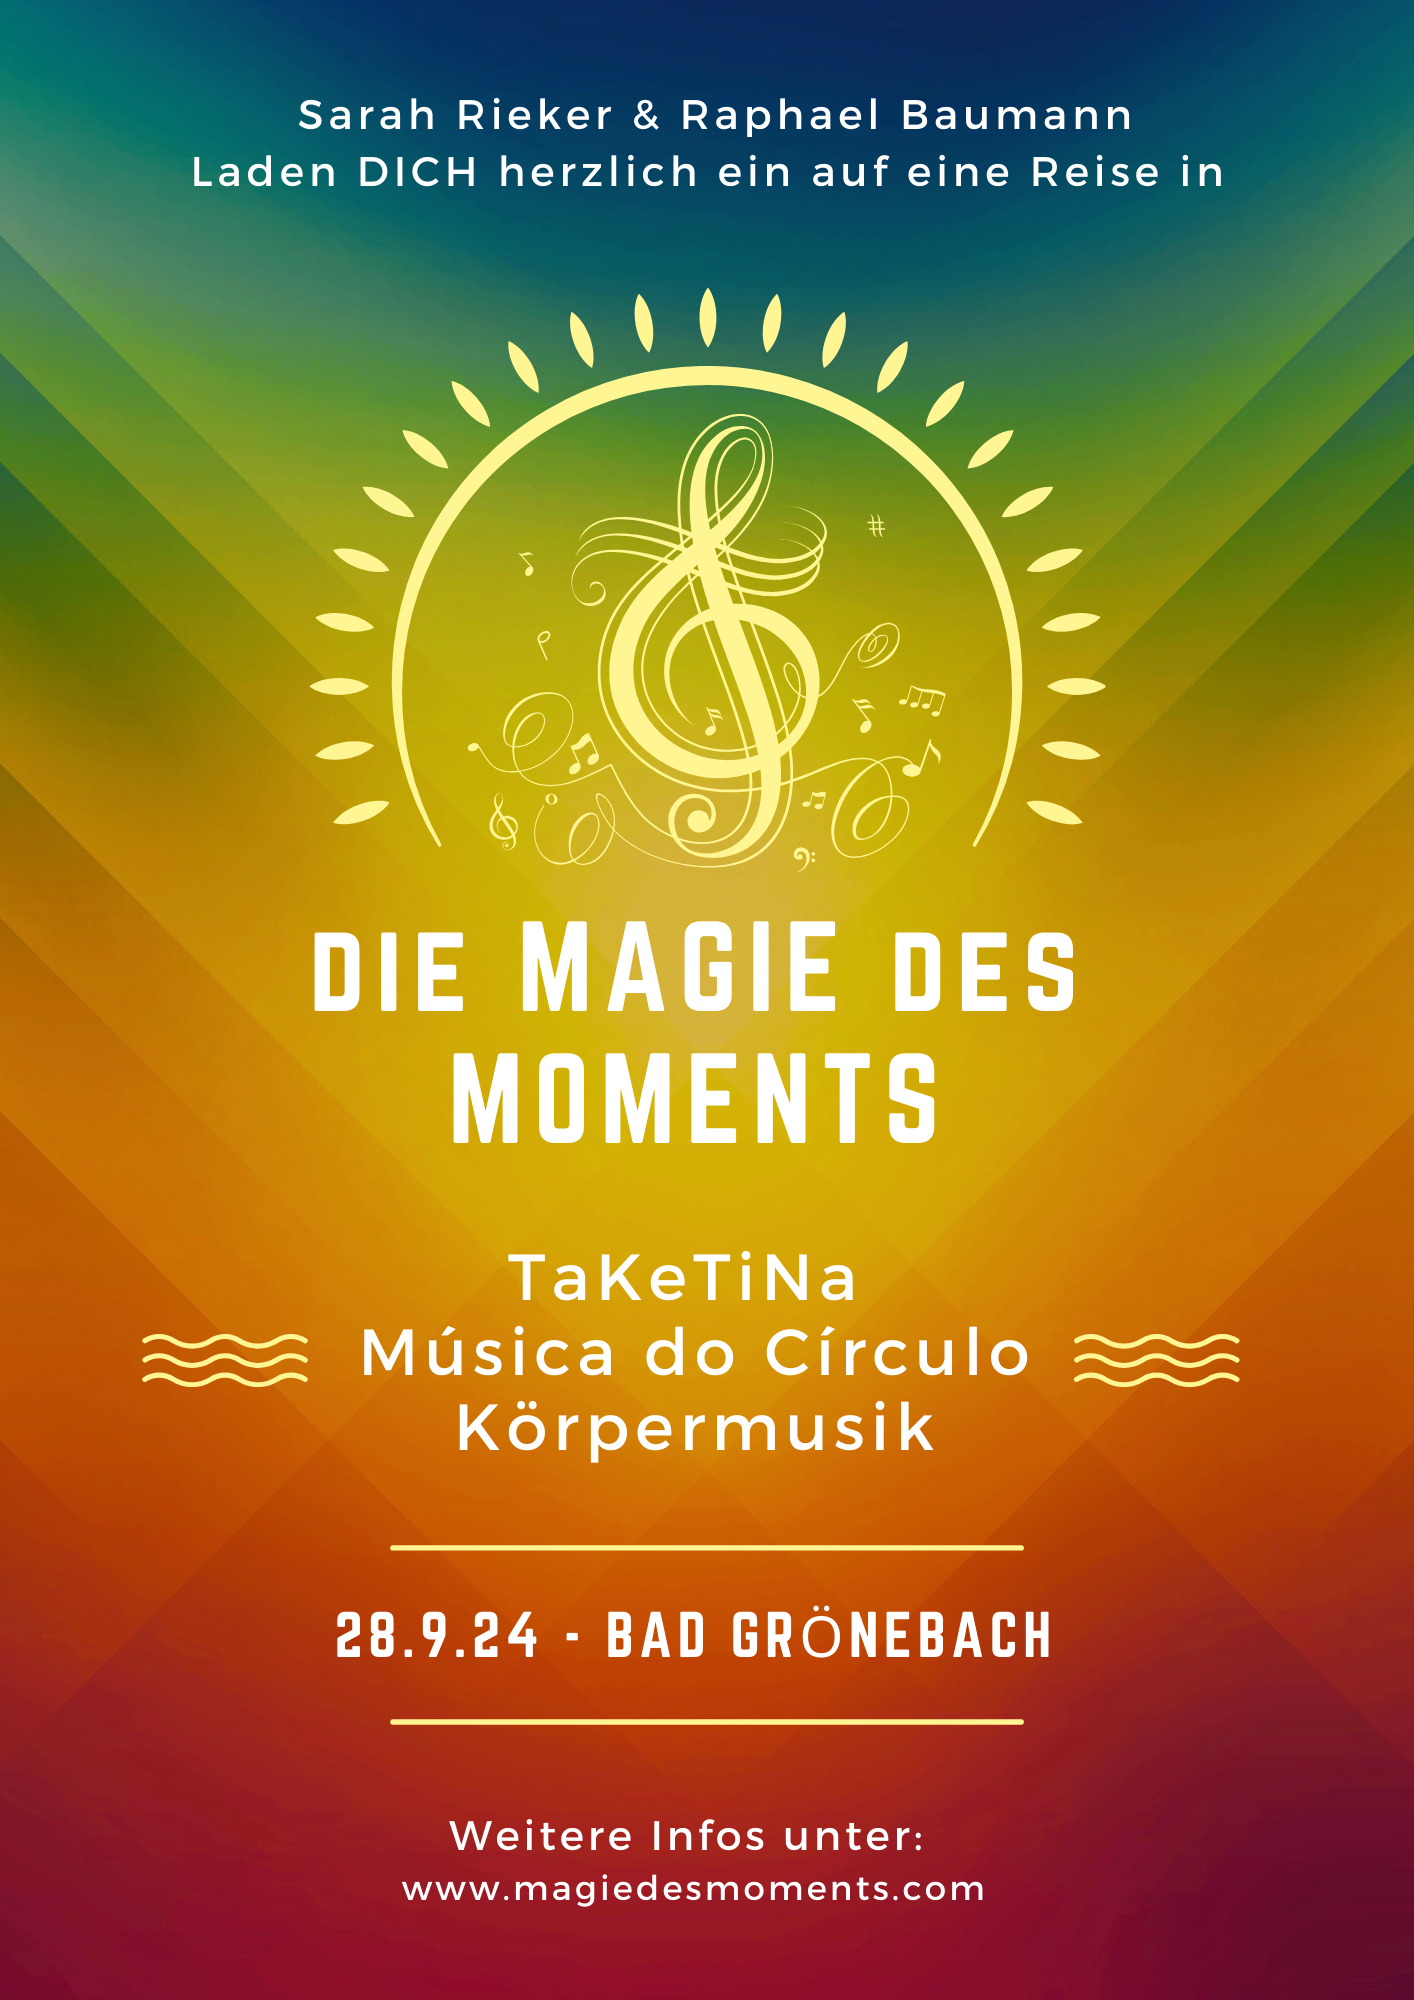 Magie des Moments mit Raphael Baumann - 28.9 in Bad Grönebach